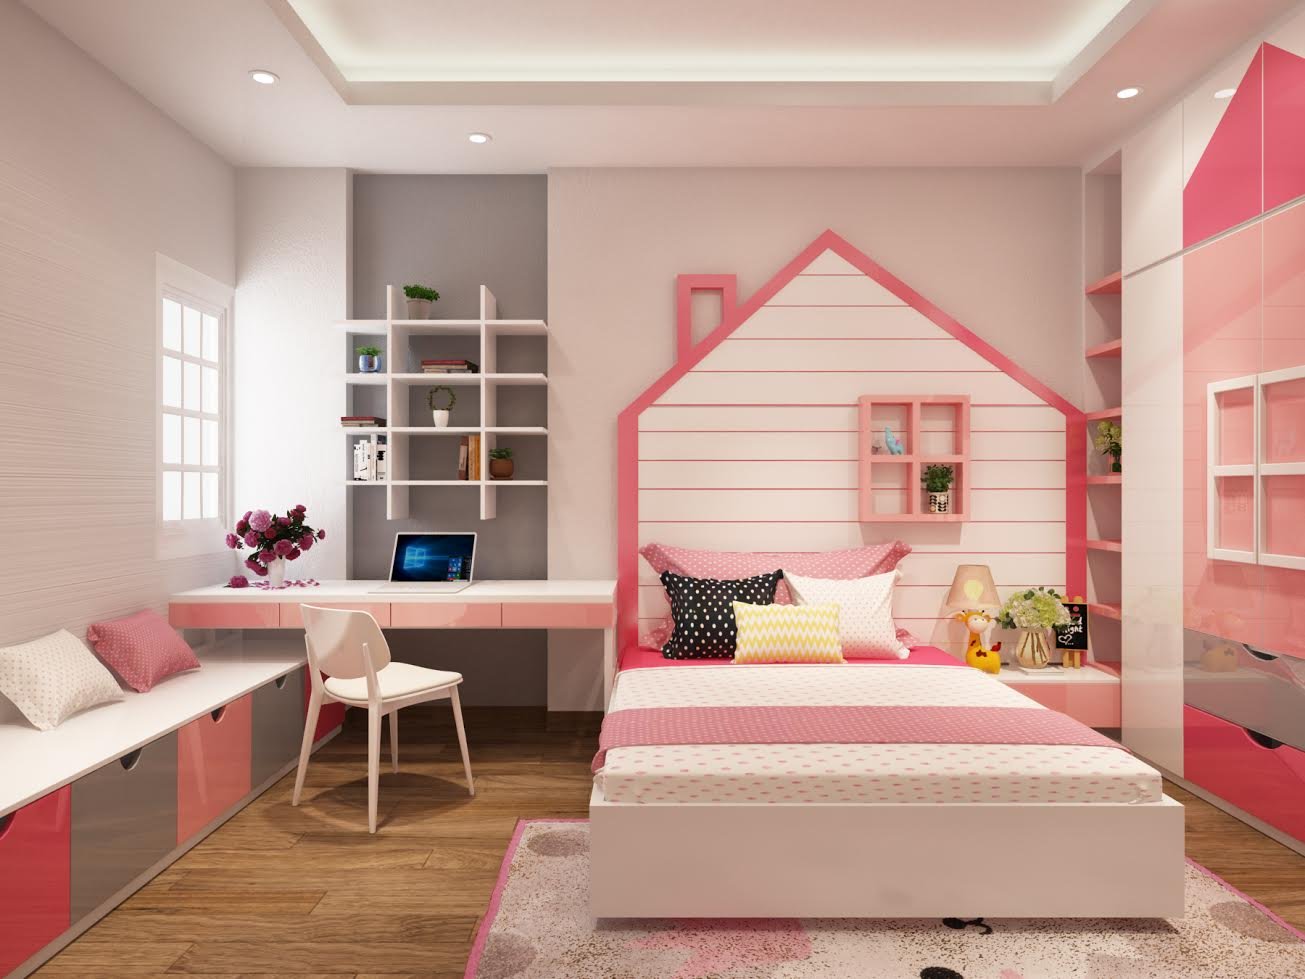 Mẫu nội thất phòng ngủ bé gái màu hồng đáng yêu tại Nghệ An